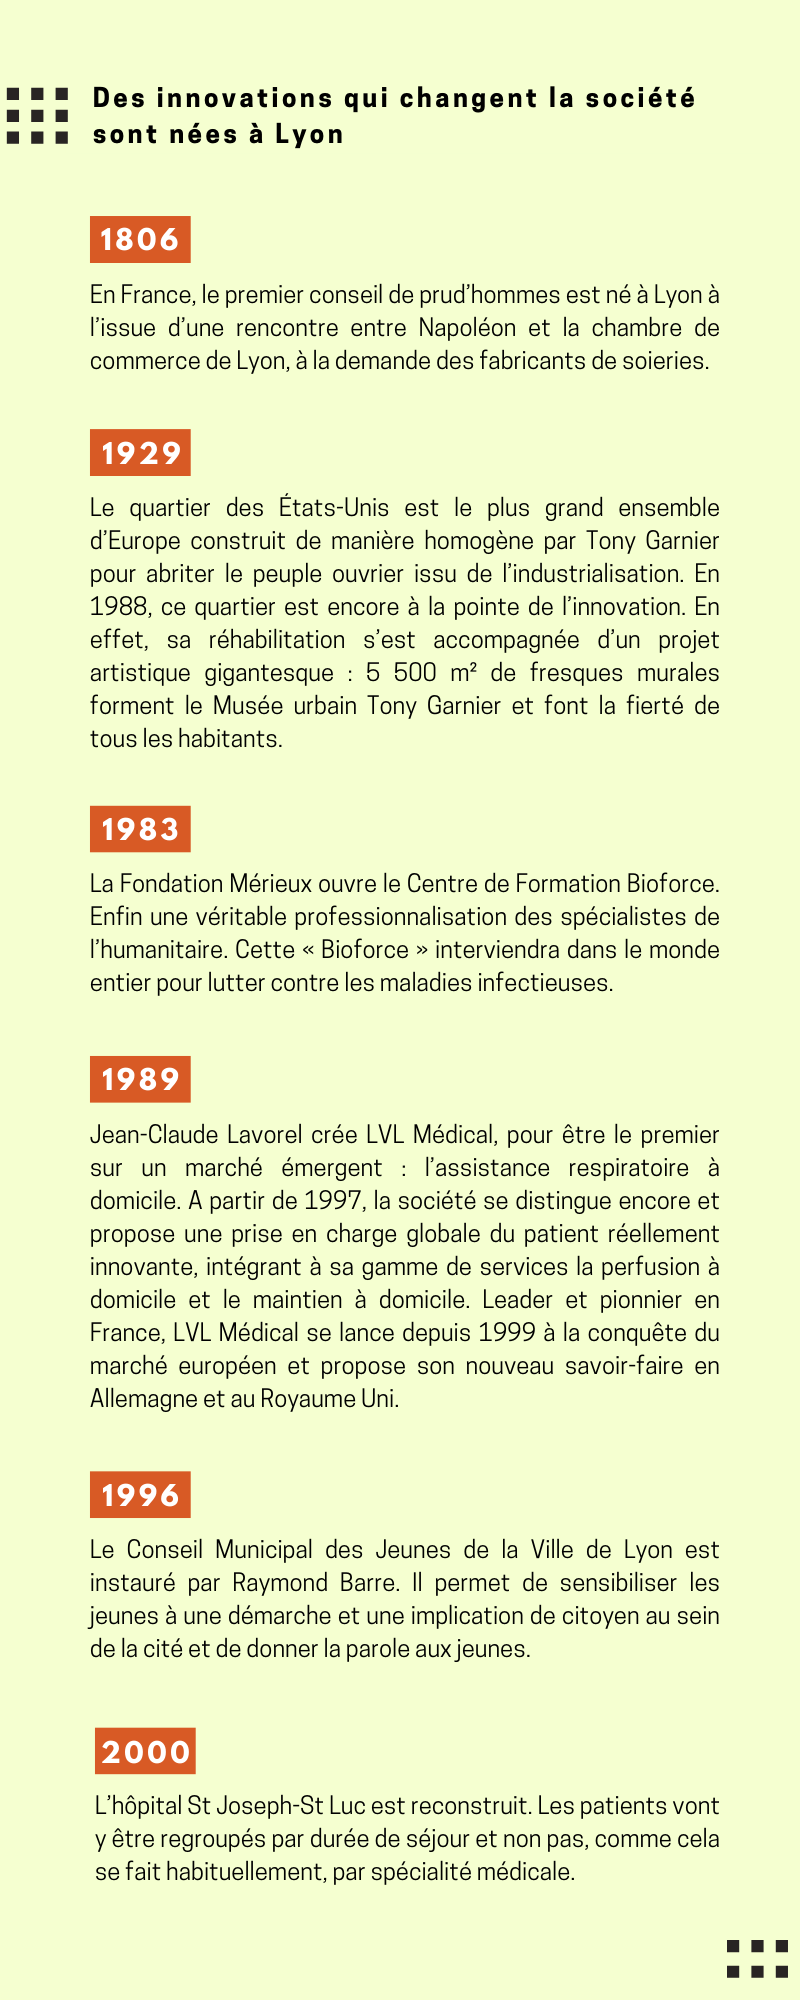 Chronologie des innovations qui changent la société nées à Lyon de 1806 à 2000